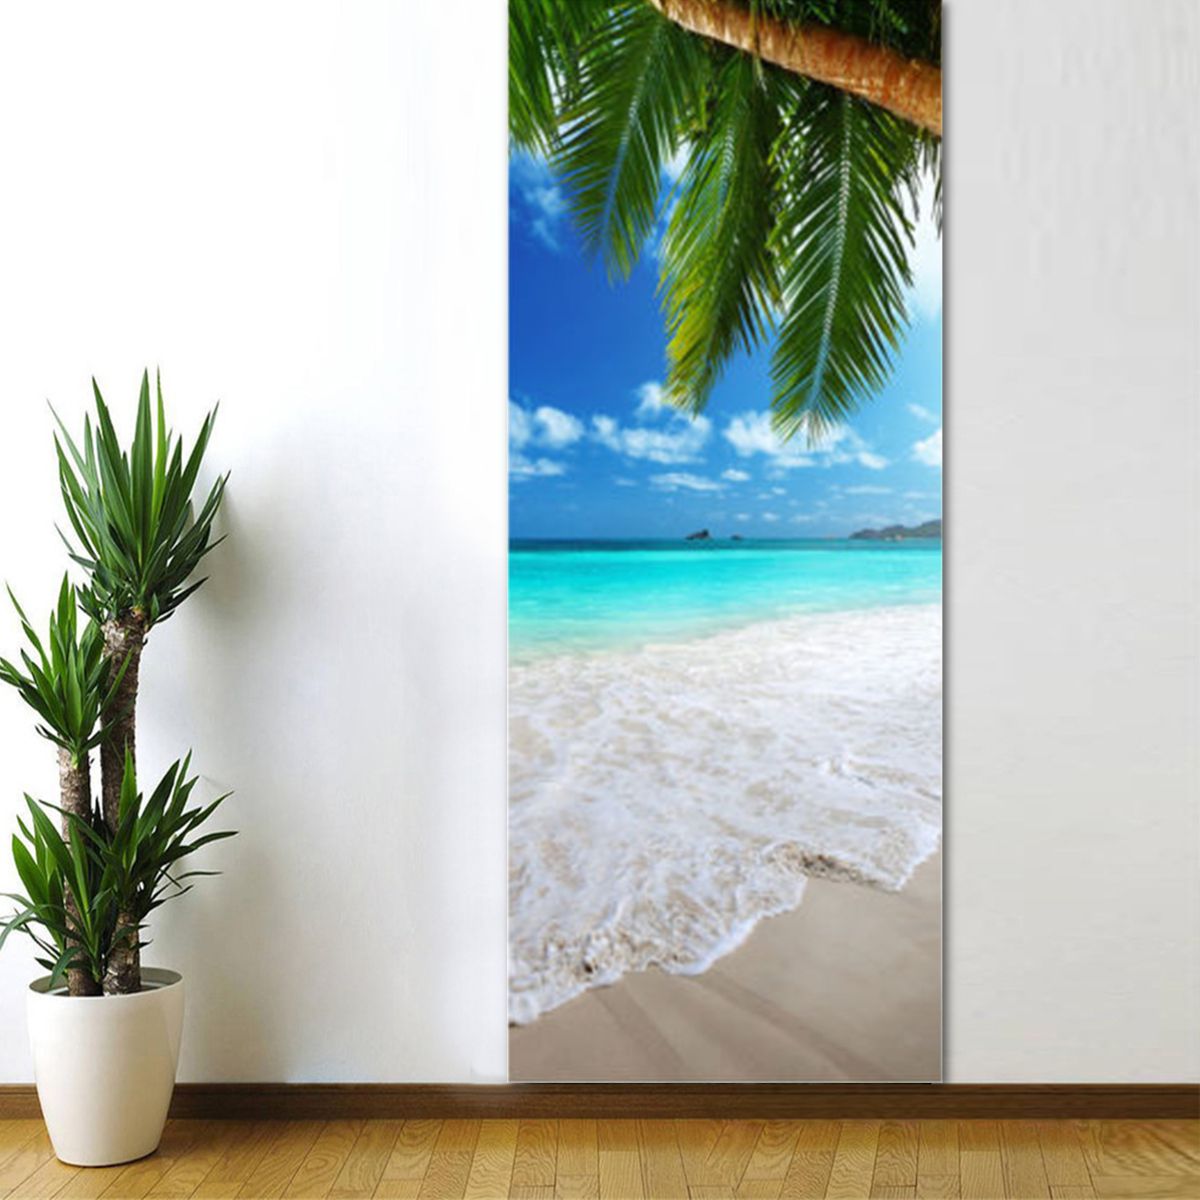 3D-Beach-Door-Sticker-Fridge-Decals-Mural-Home-Wall-Decorations-1444002